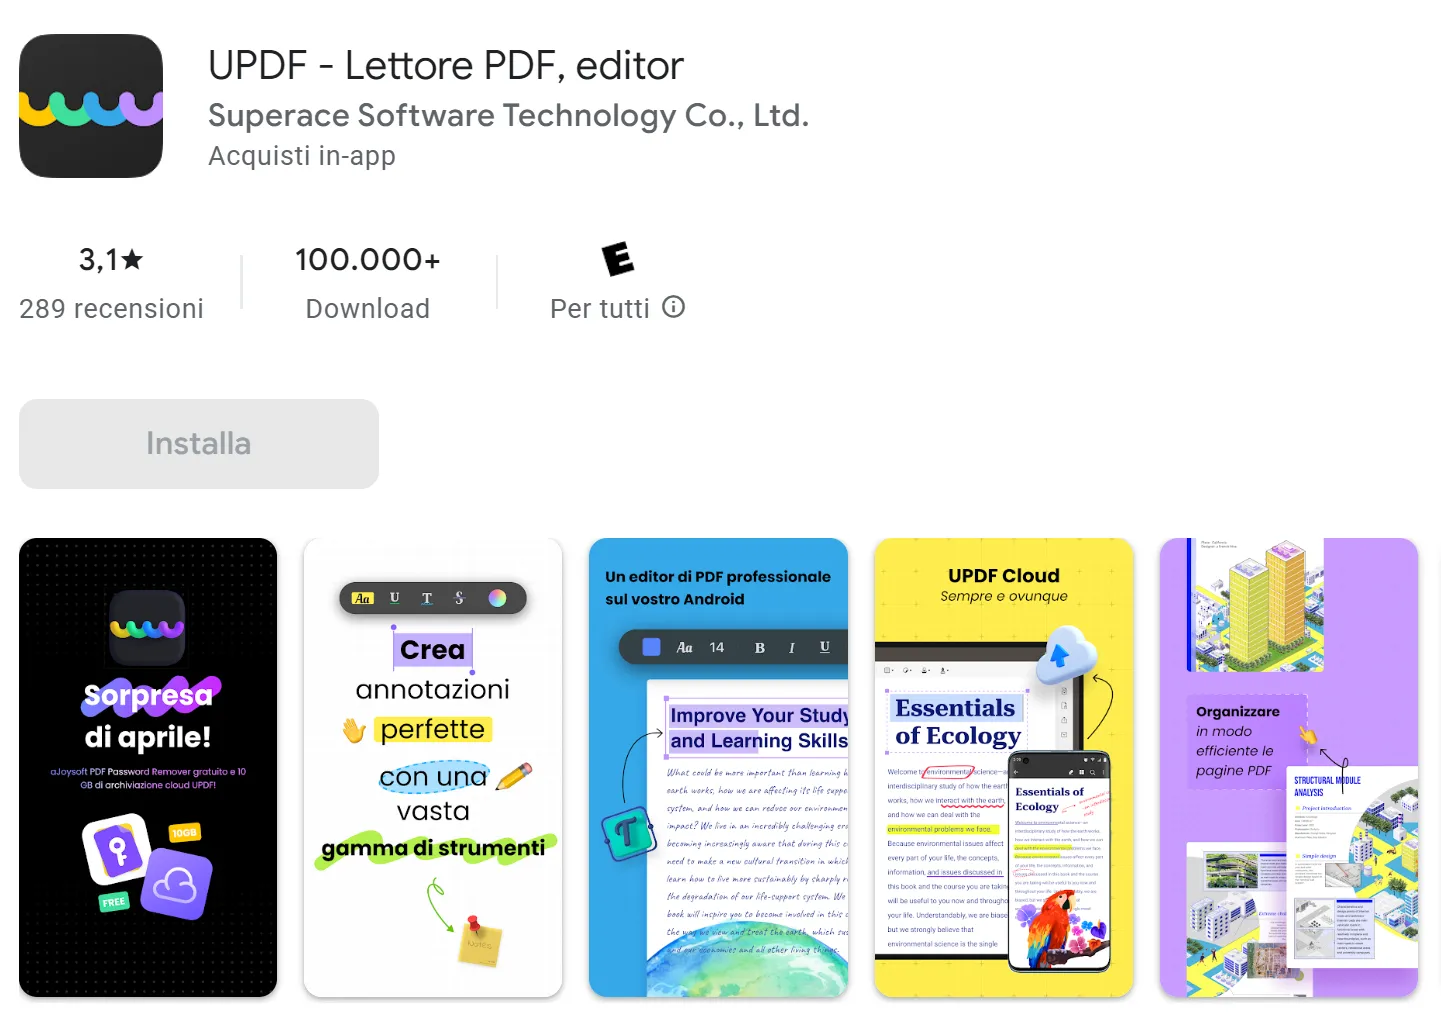 miglior lettore PDF per Android: UPDF